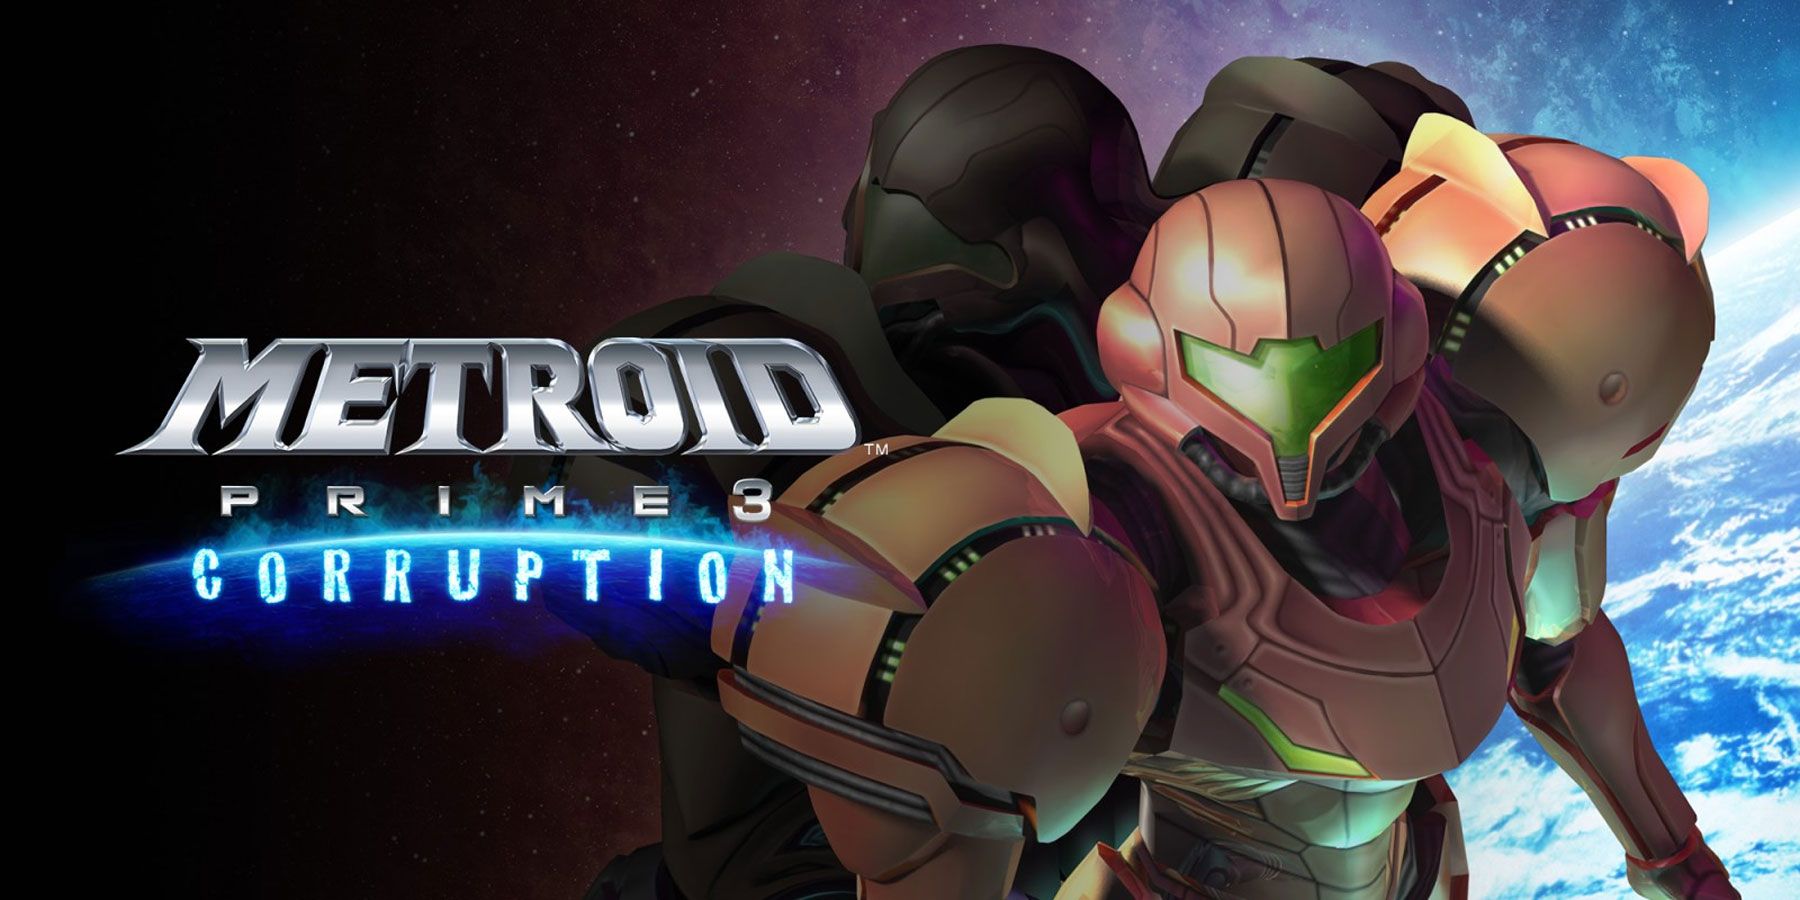 Metroid Prime 3 was oorspronkelijk gepitcht als een open-wereldgame